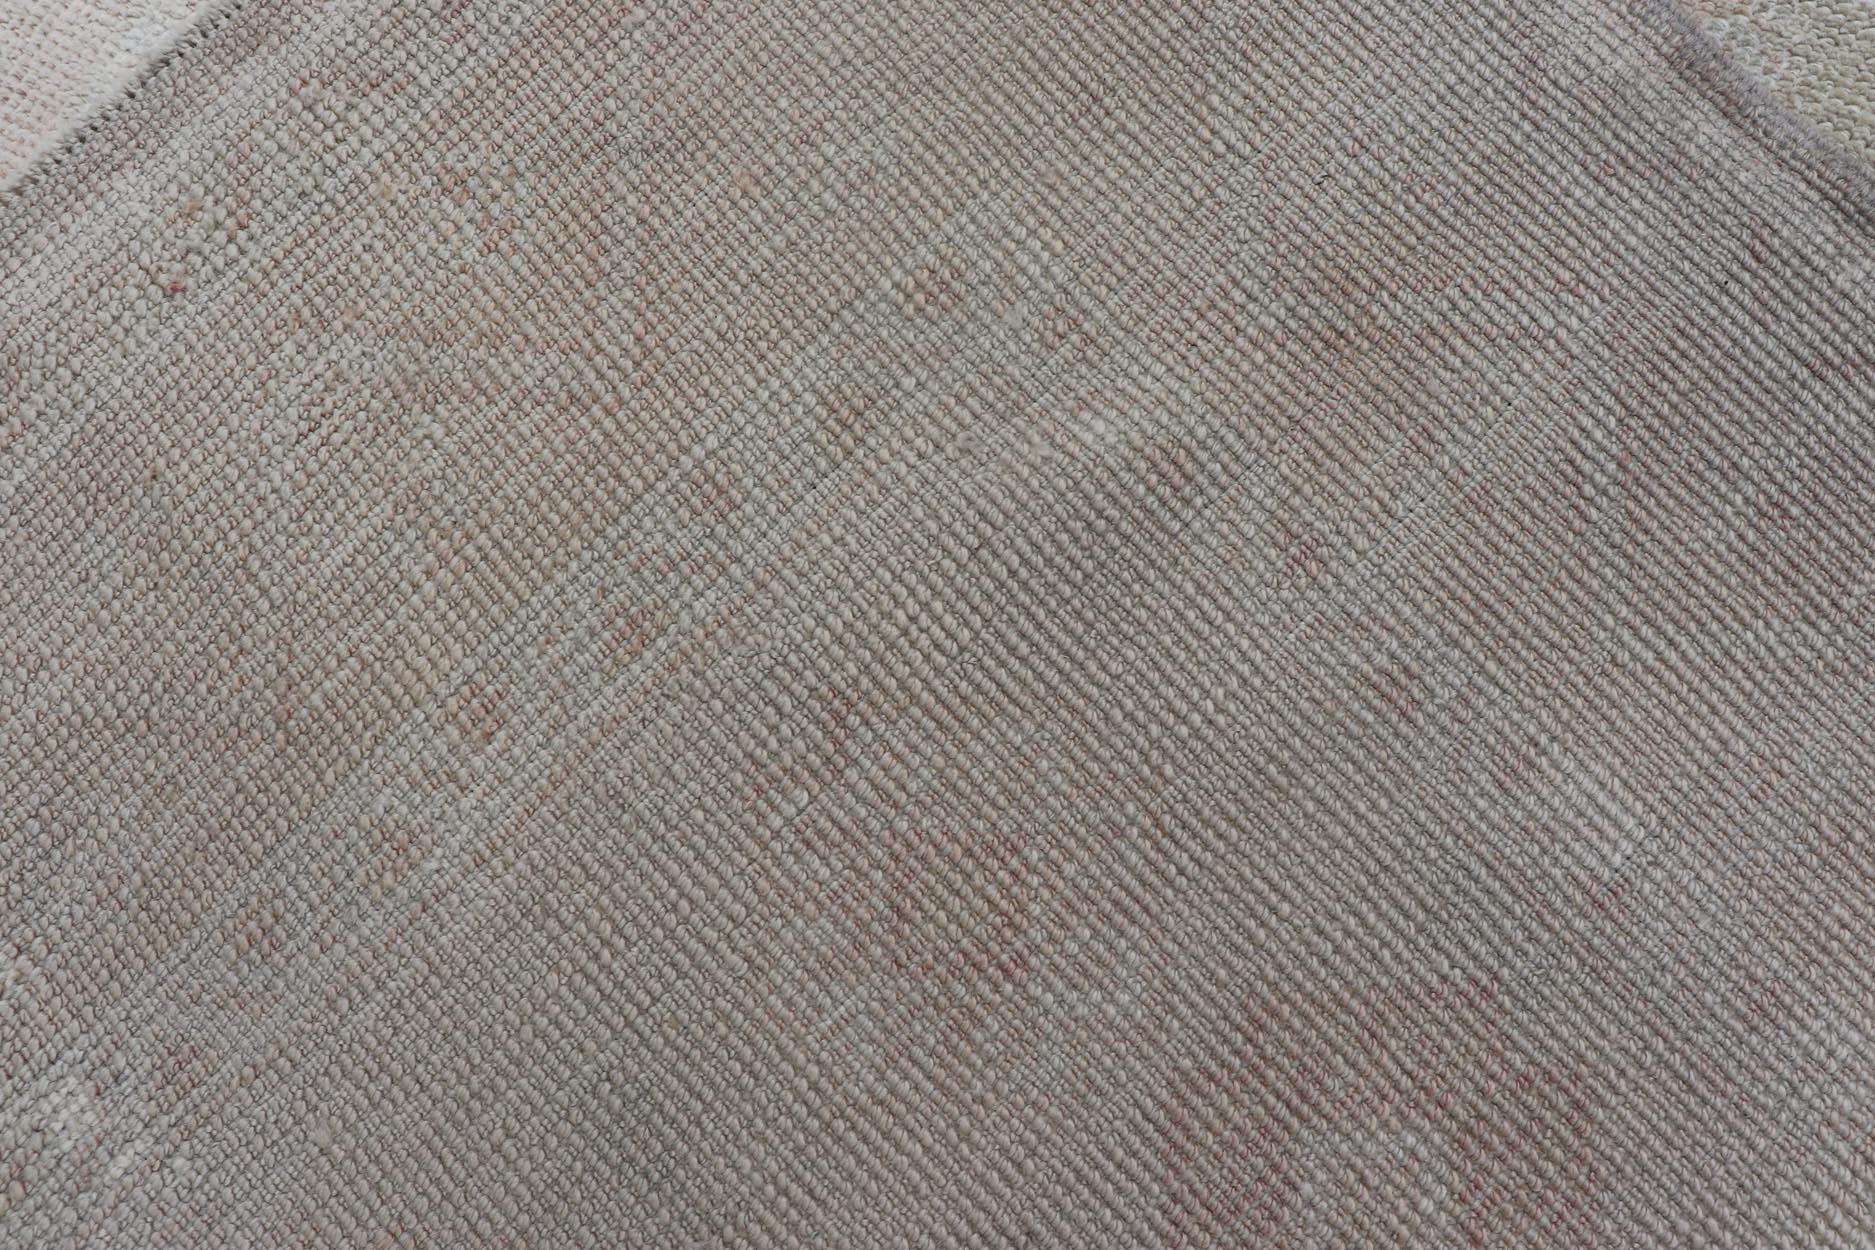 Oushak Vintage-Teppich mit Pastellfarben in Tan, Grün, Buttergelb, Rosa und Pfirsich. Keivan Woven Arts, Teppich EN-15526, Herkunftsland / Art: Türkei / Oushak, um die Mitte des 20. Jahrhunderts.

Maße: 4'6 x 6'0 

Dieser türkische Oushak-Teppich im